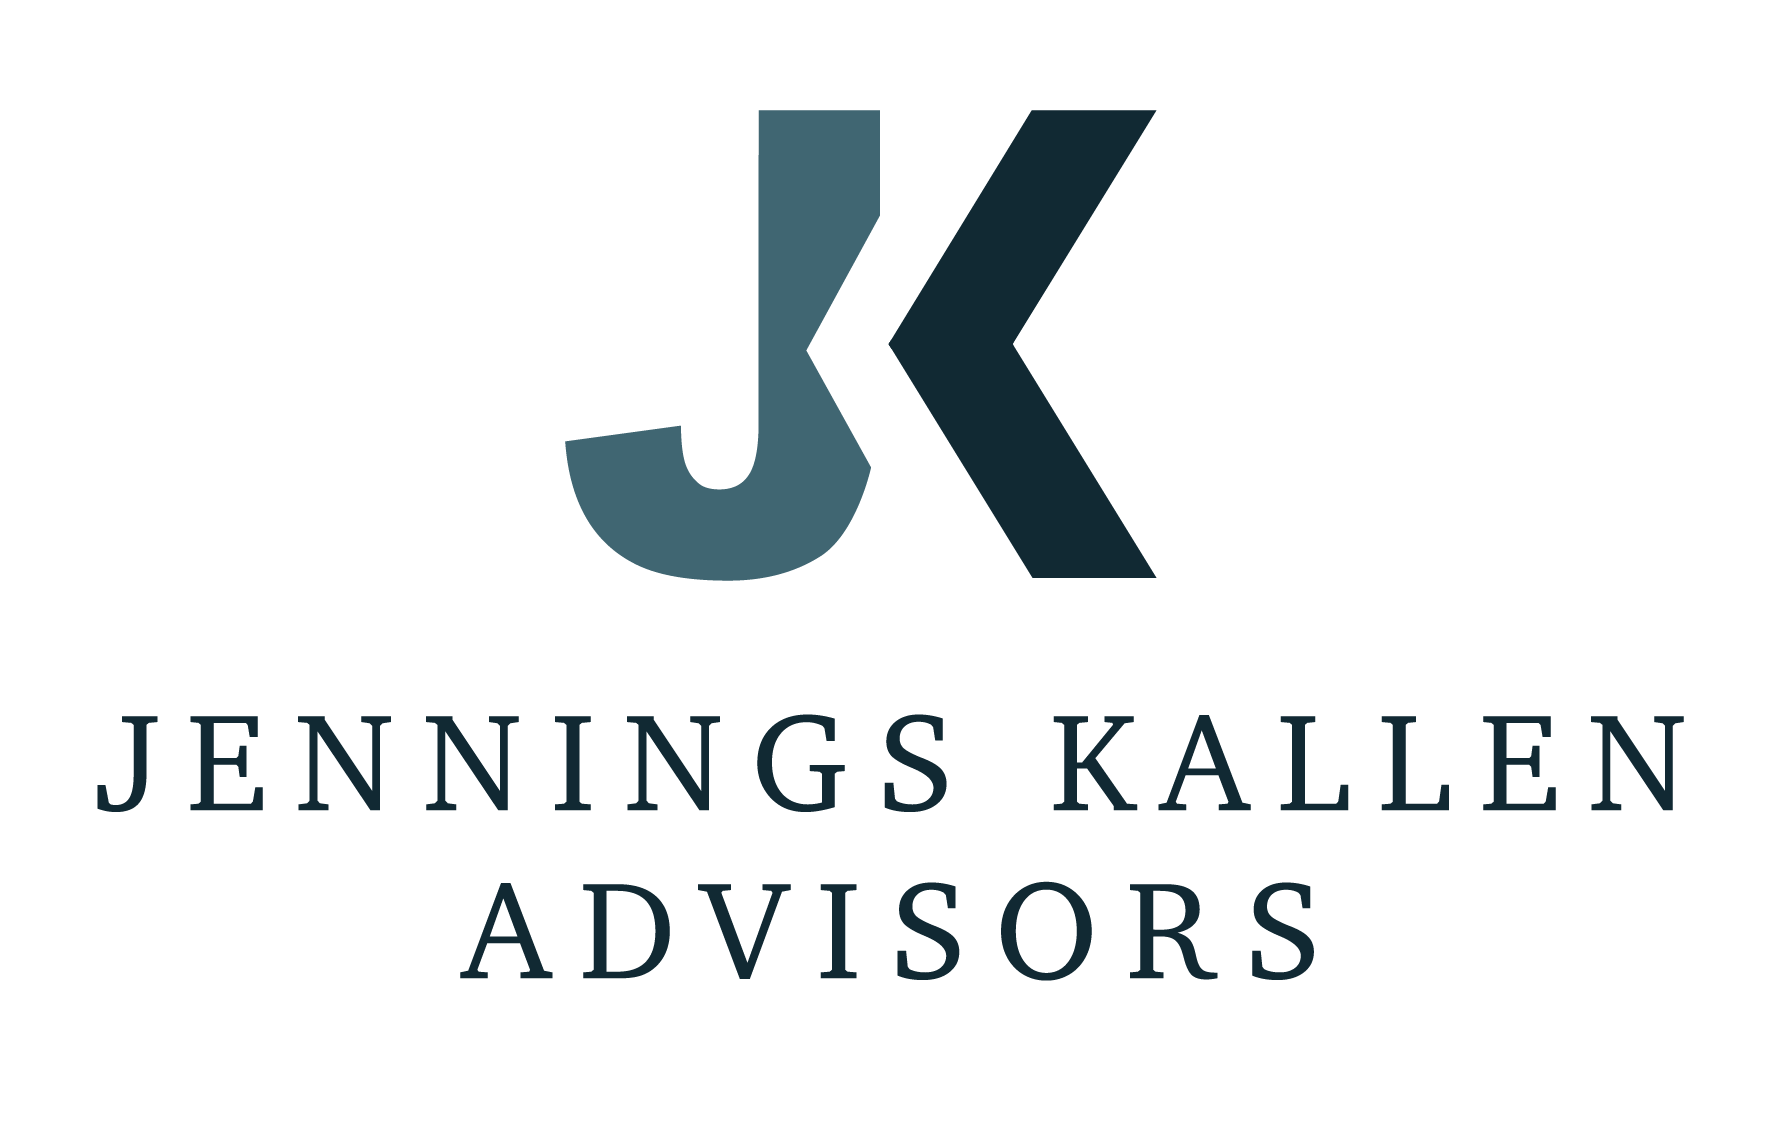 Jennings Kallen Advisors